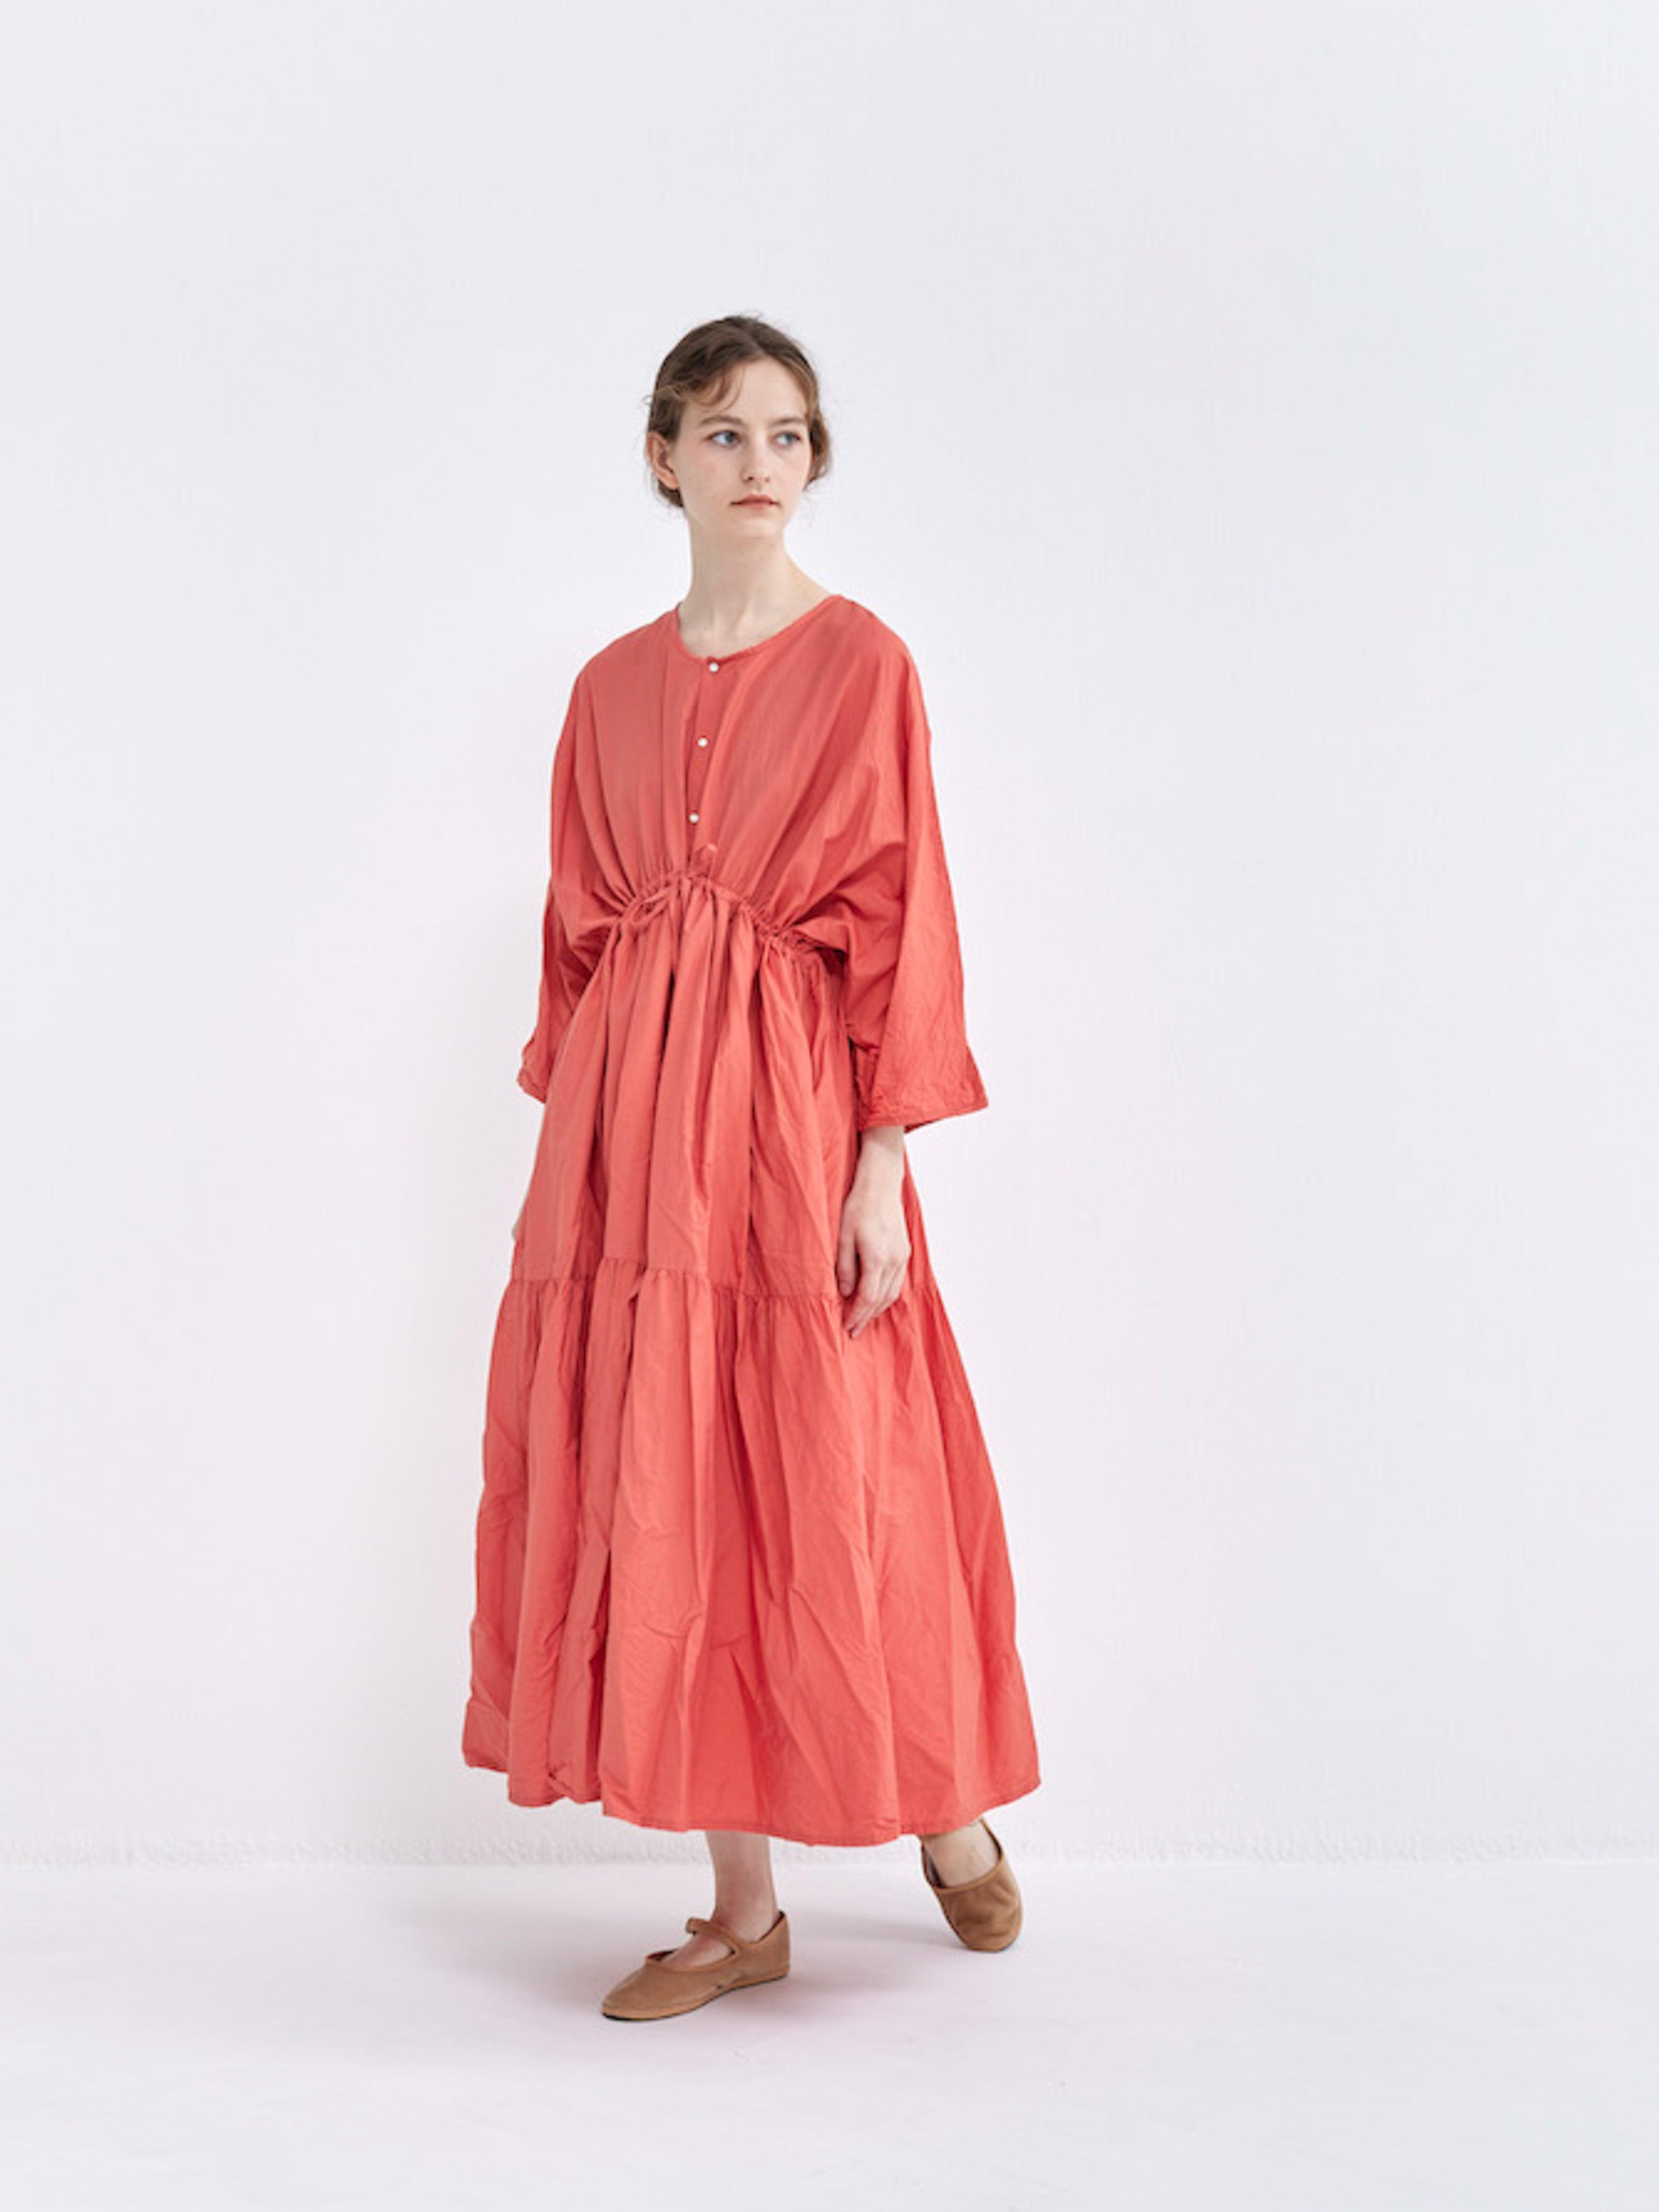 Namu Shop - Veritecoeur Co / Silk Two Way Dress - Mint Gray